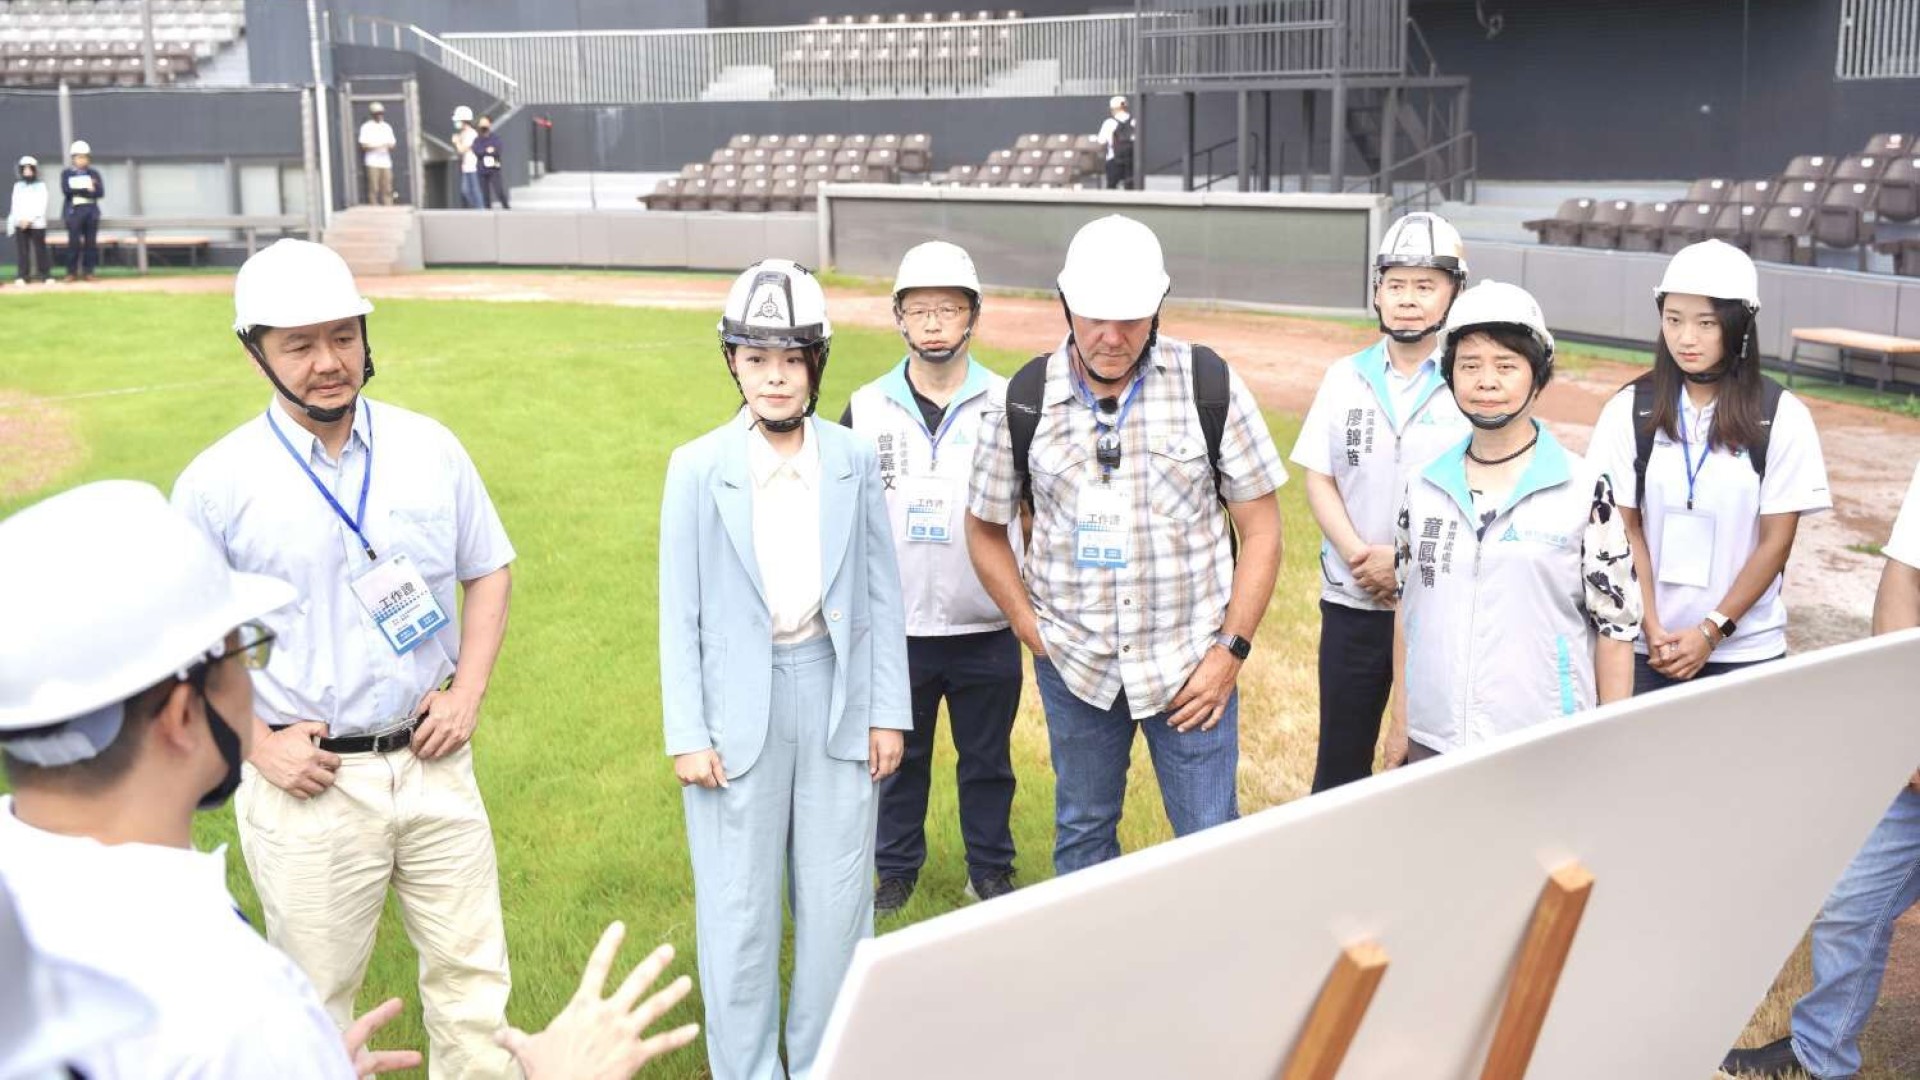 新竹市長高虹安偕同Chad Olsen至新竹市立棒球場展開場地檢測與評估工作。(圖/新竹市政府)